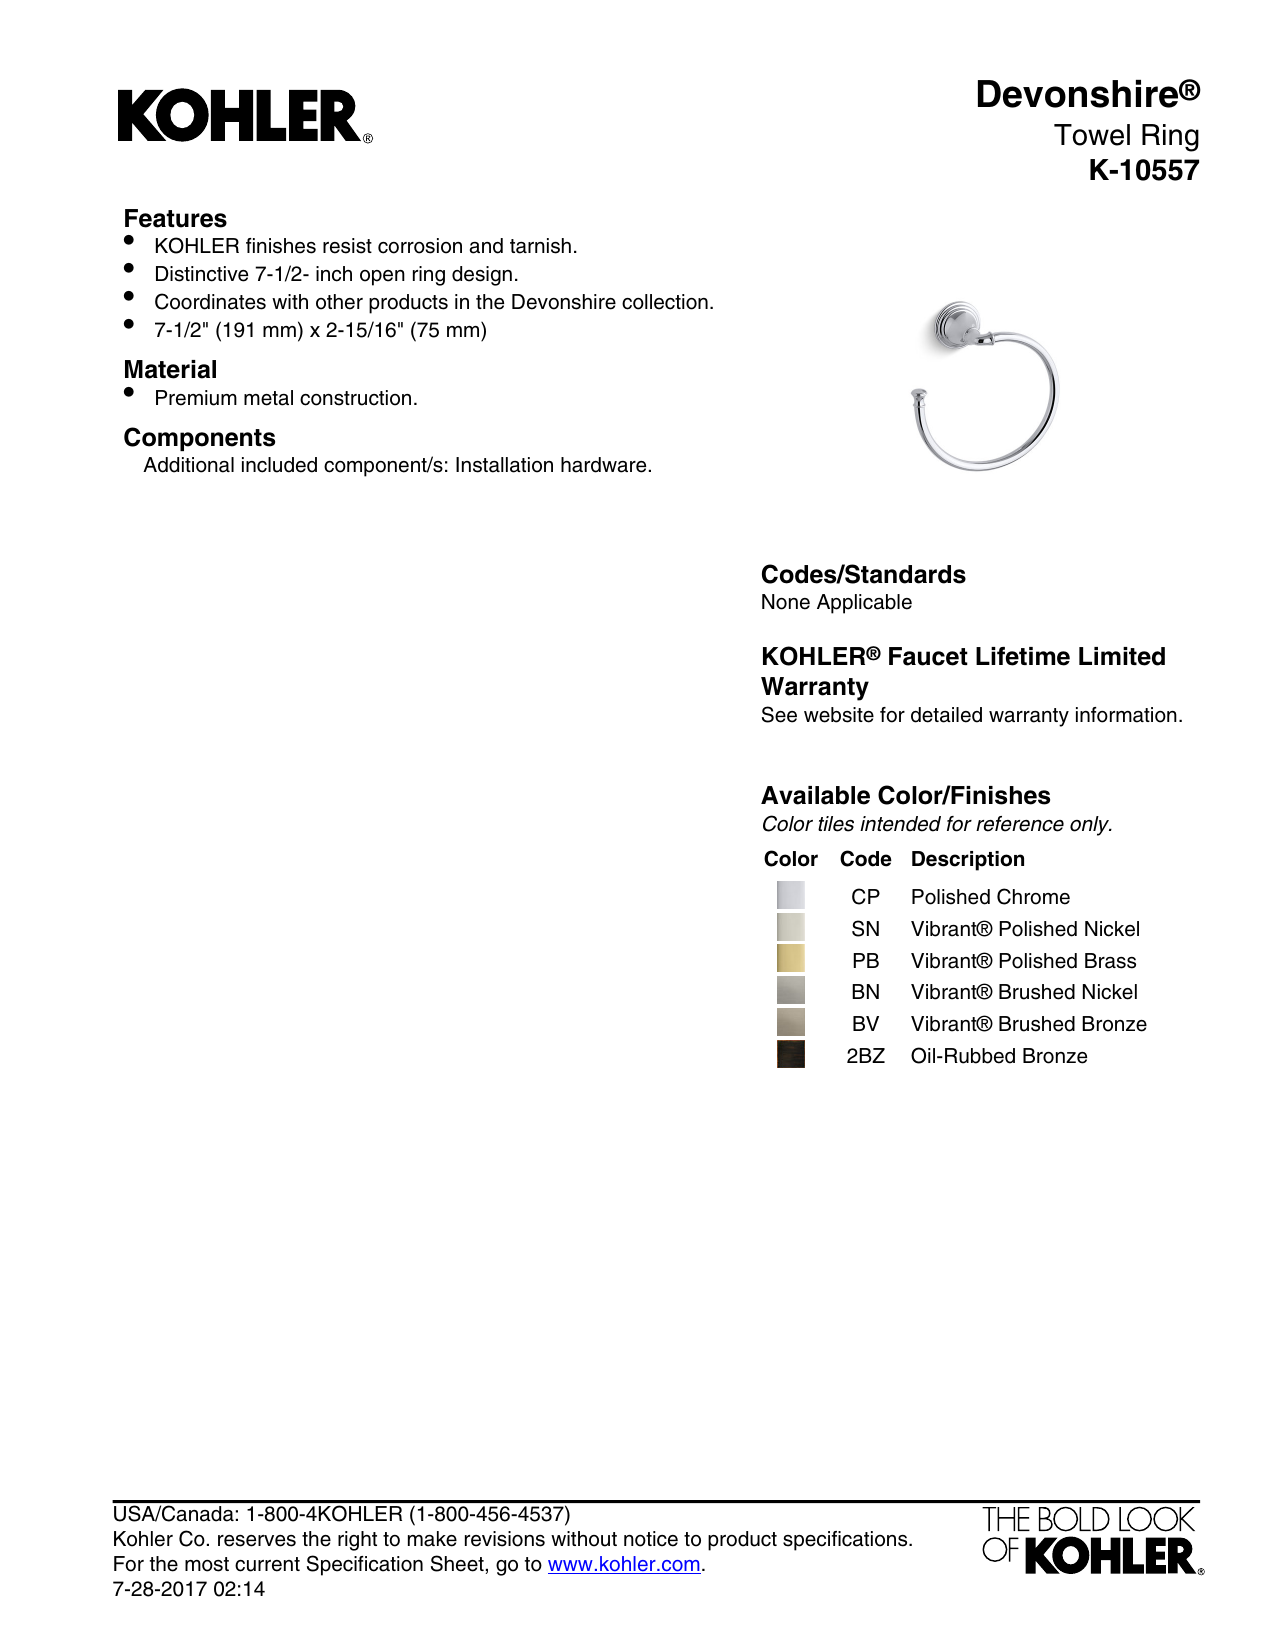 KOHLER K-10557-SN Devonshire Bathroom Towel Ring Vibrant Polished Nickel